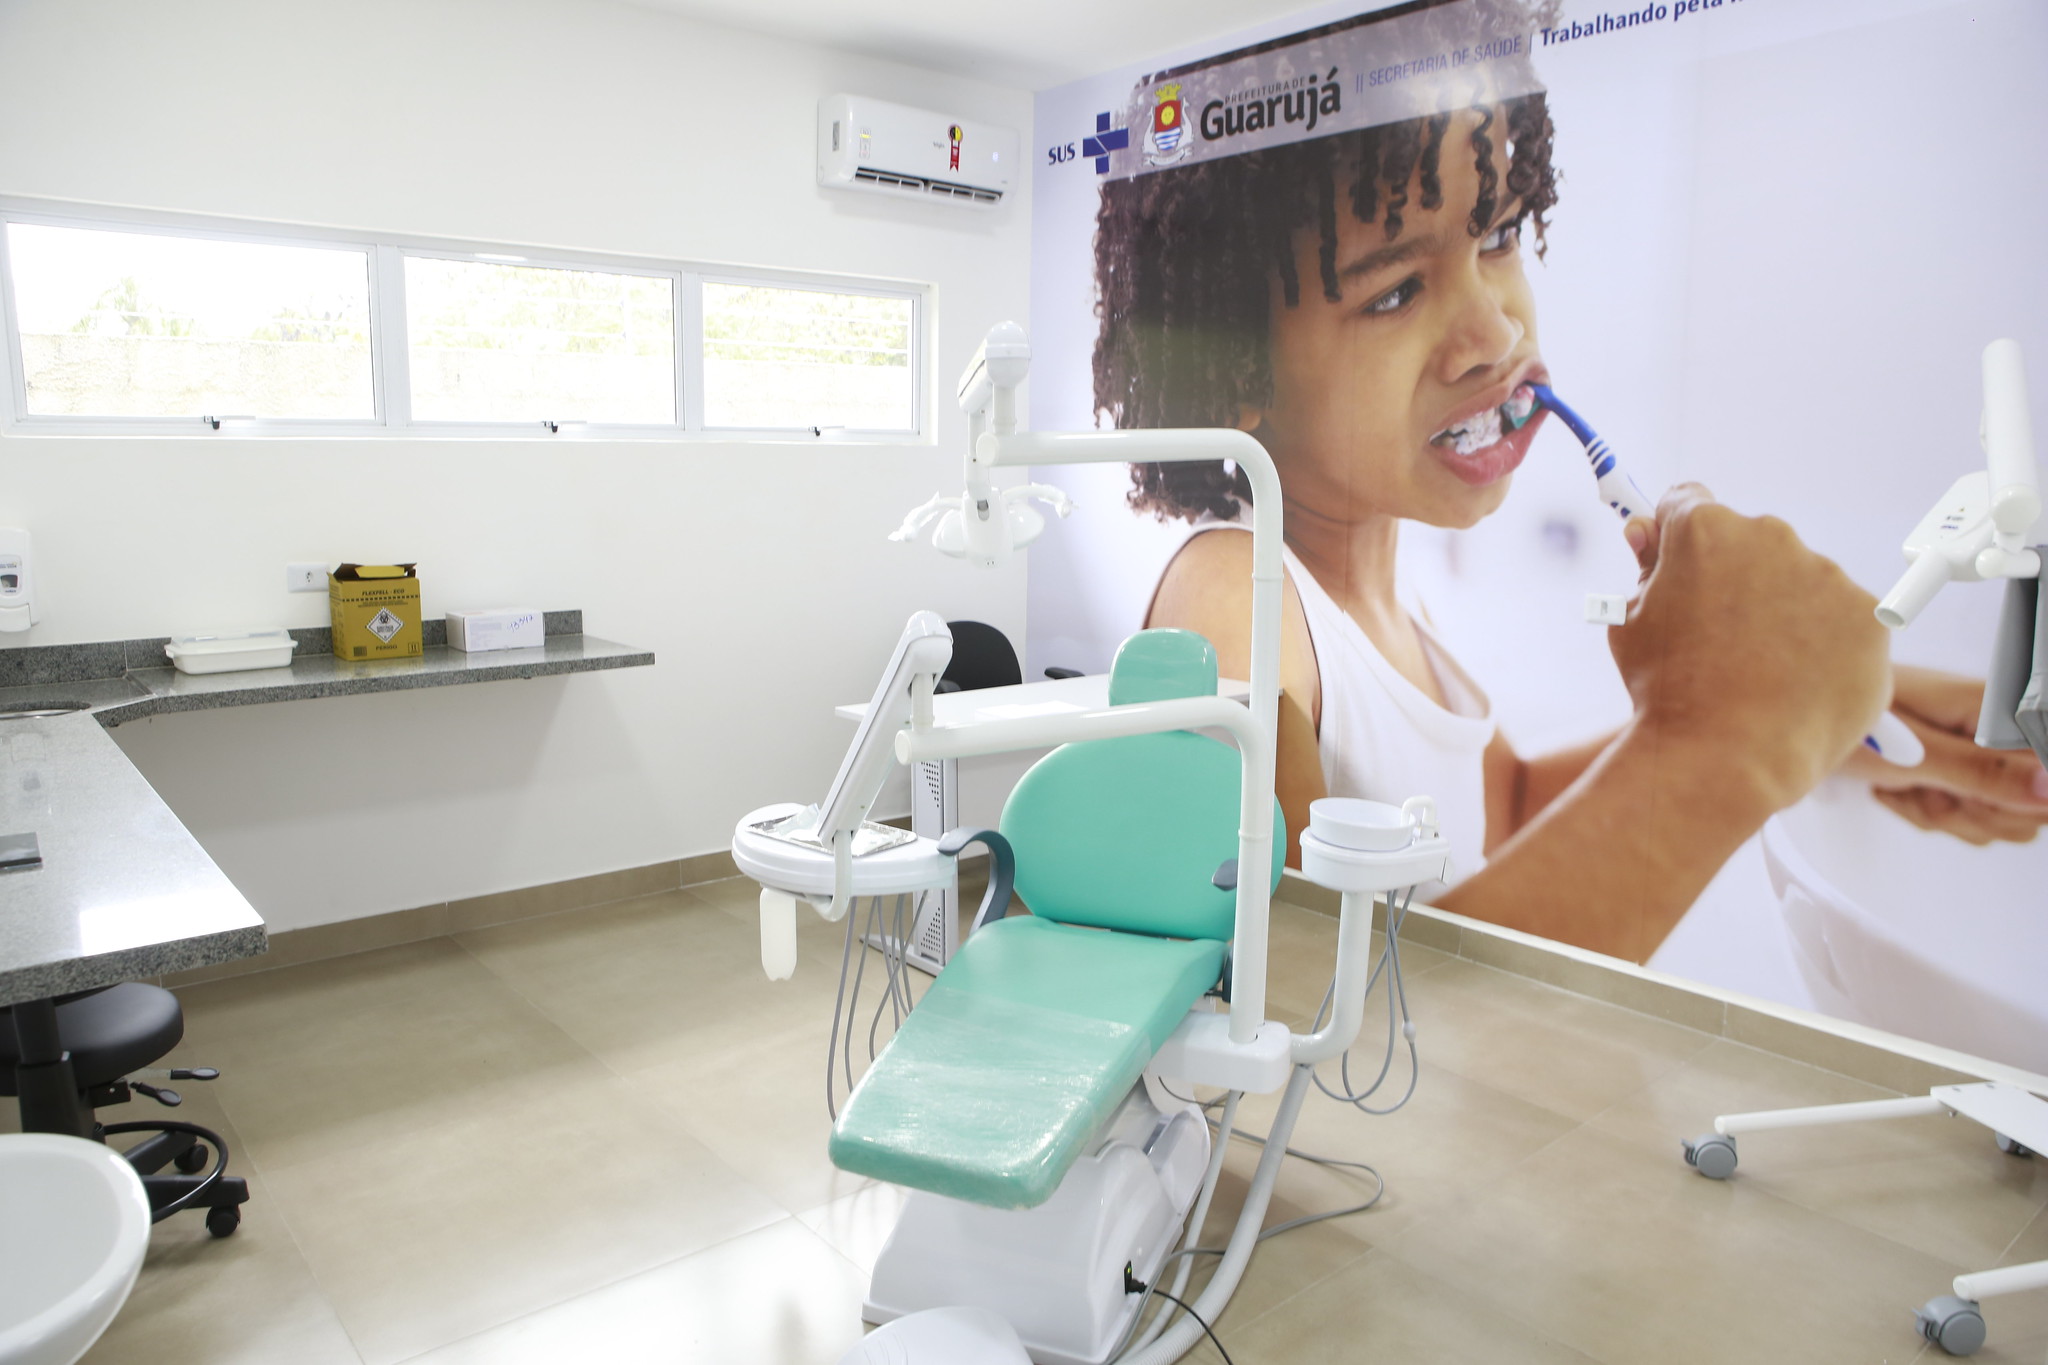 Guarujá ganha novo Centro de Especialidades Odontológicas com atendimento 24 horas